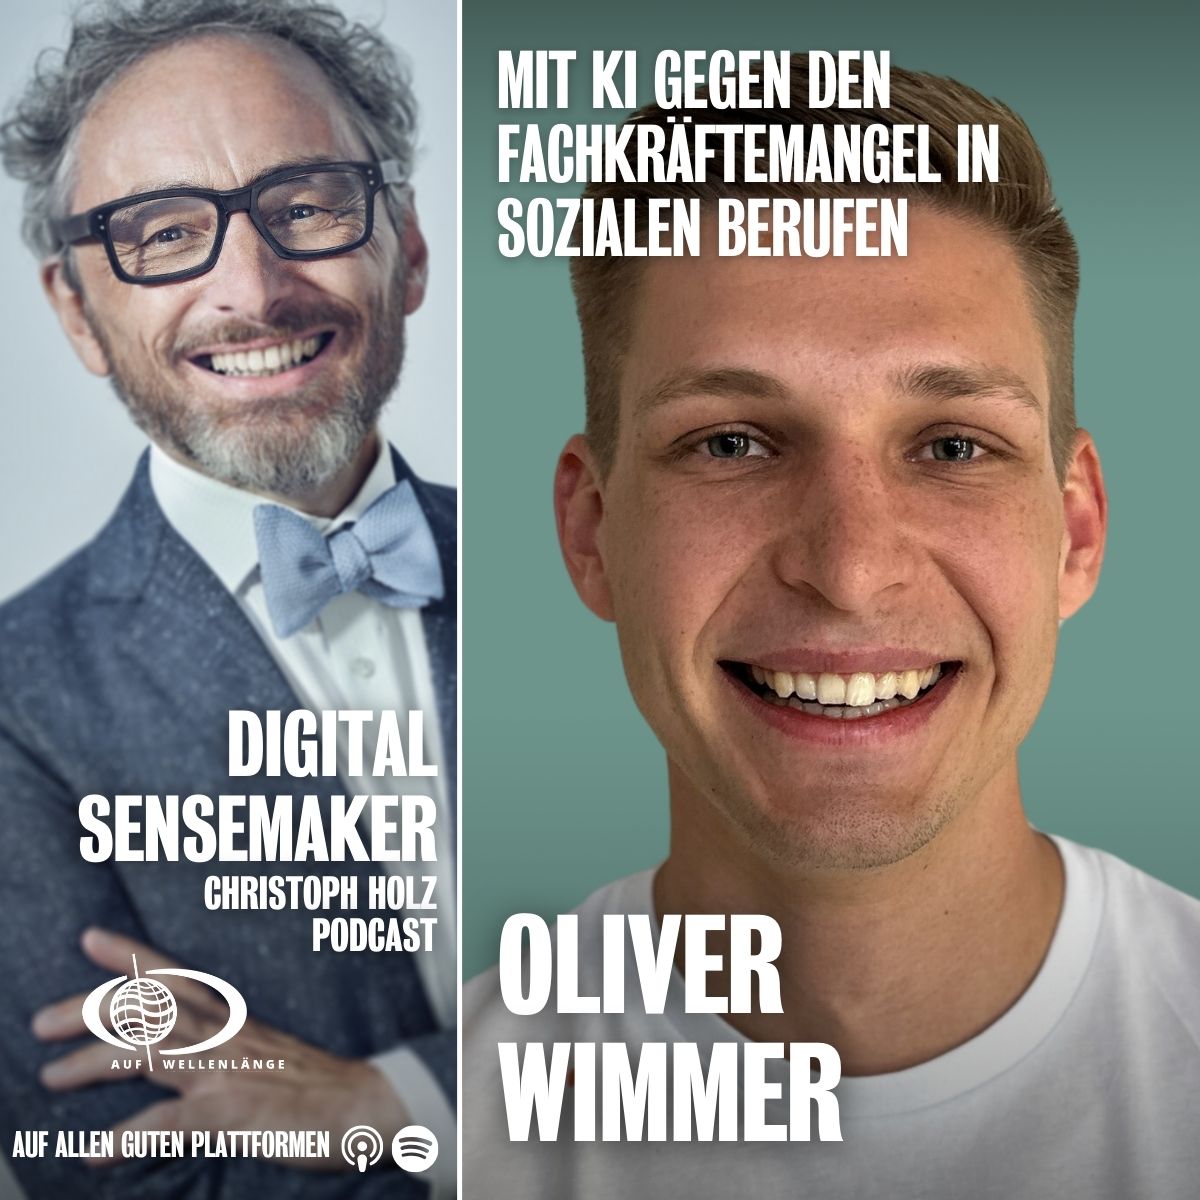 #134 "Die KI gegen medizinischen  und sozialen Fachkräftemangel" mit Oliver Wimmer, CEO und Co Founder von "Herzensapp"